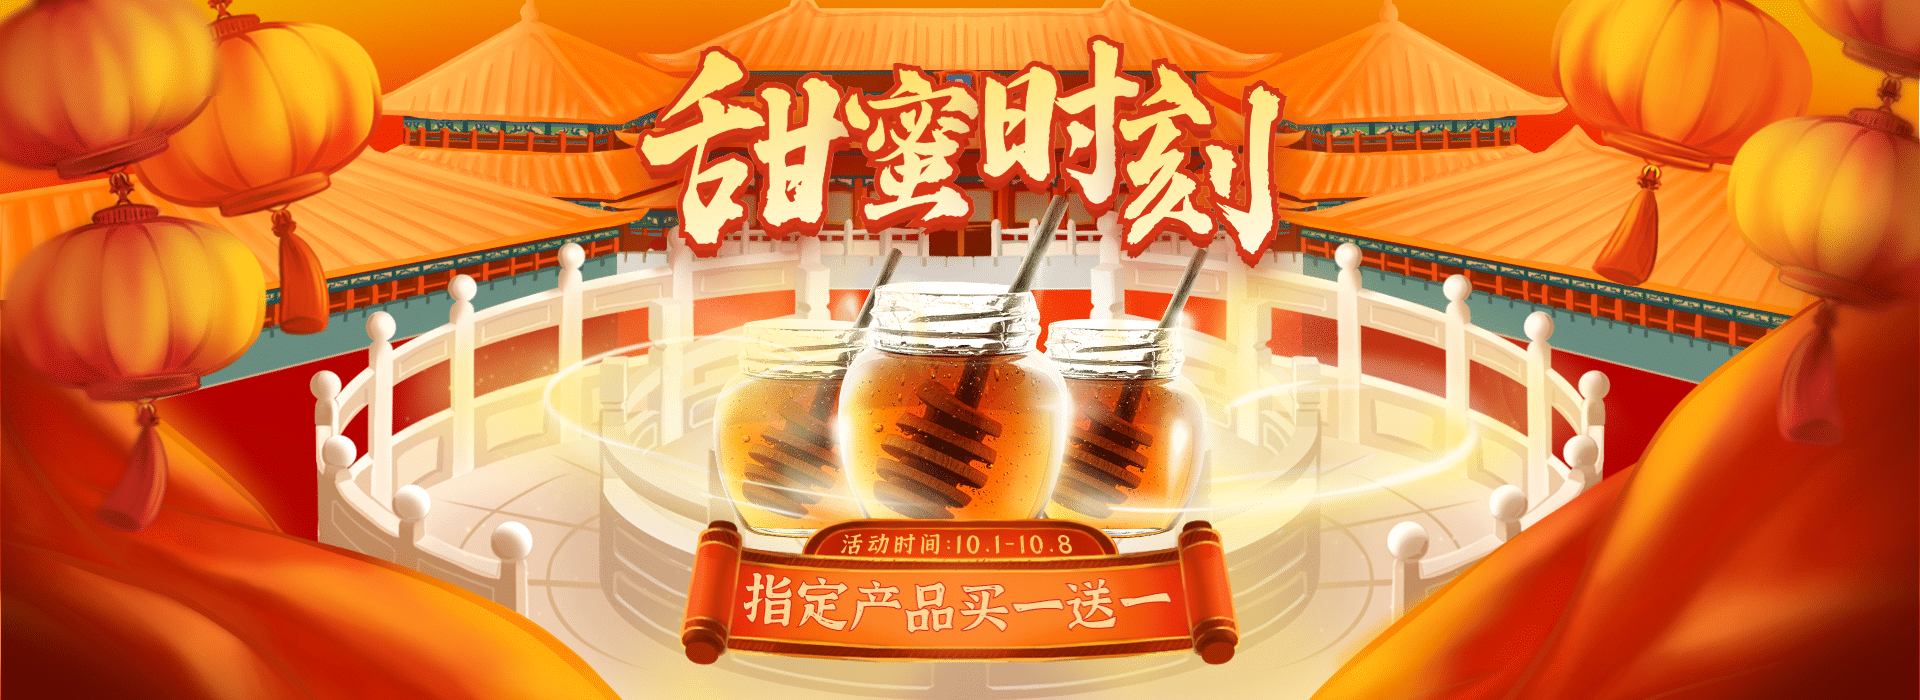 国庆节中国风蜂蜜电商横版海报预览效果